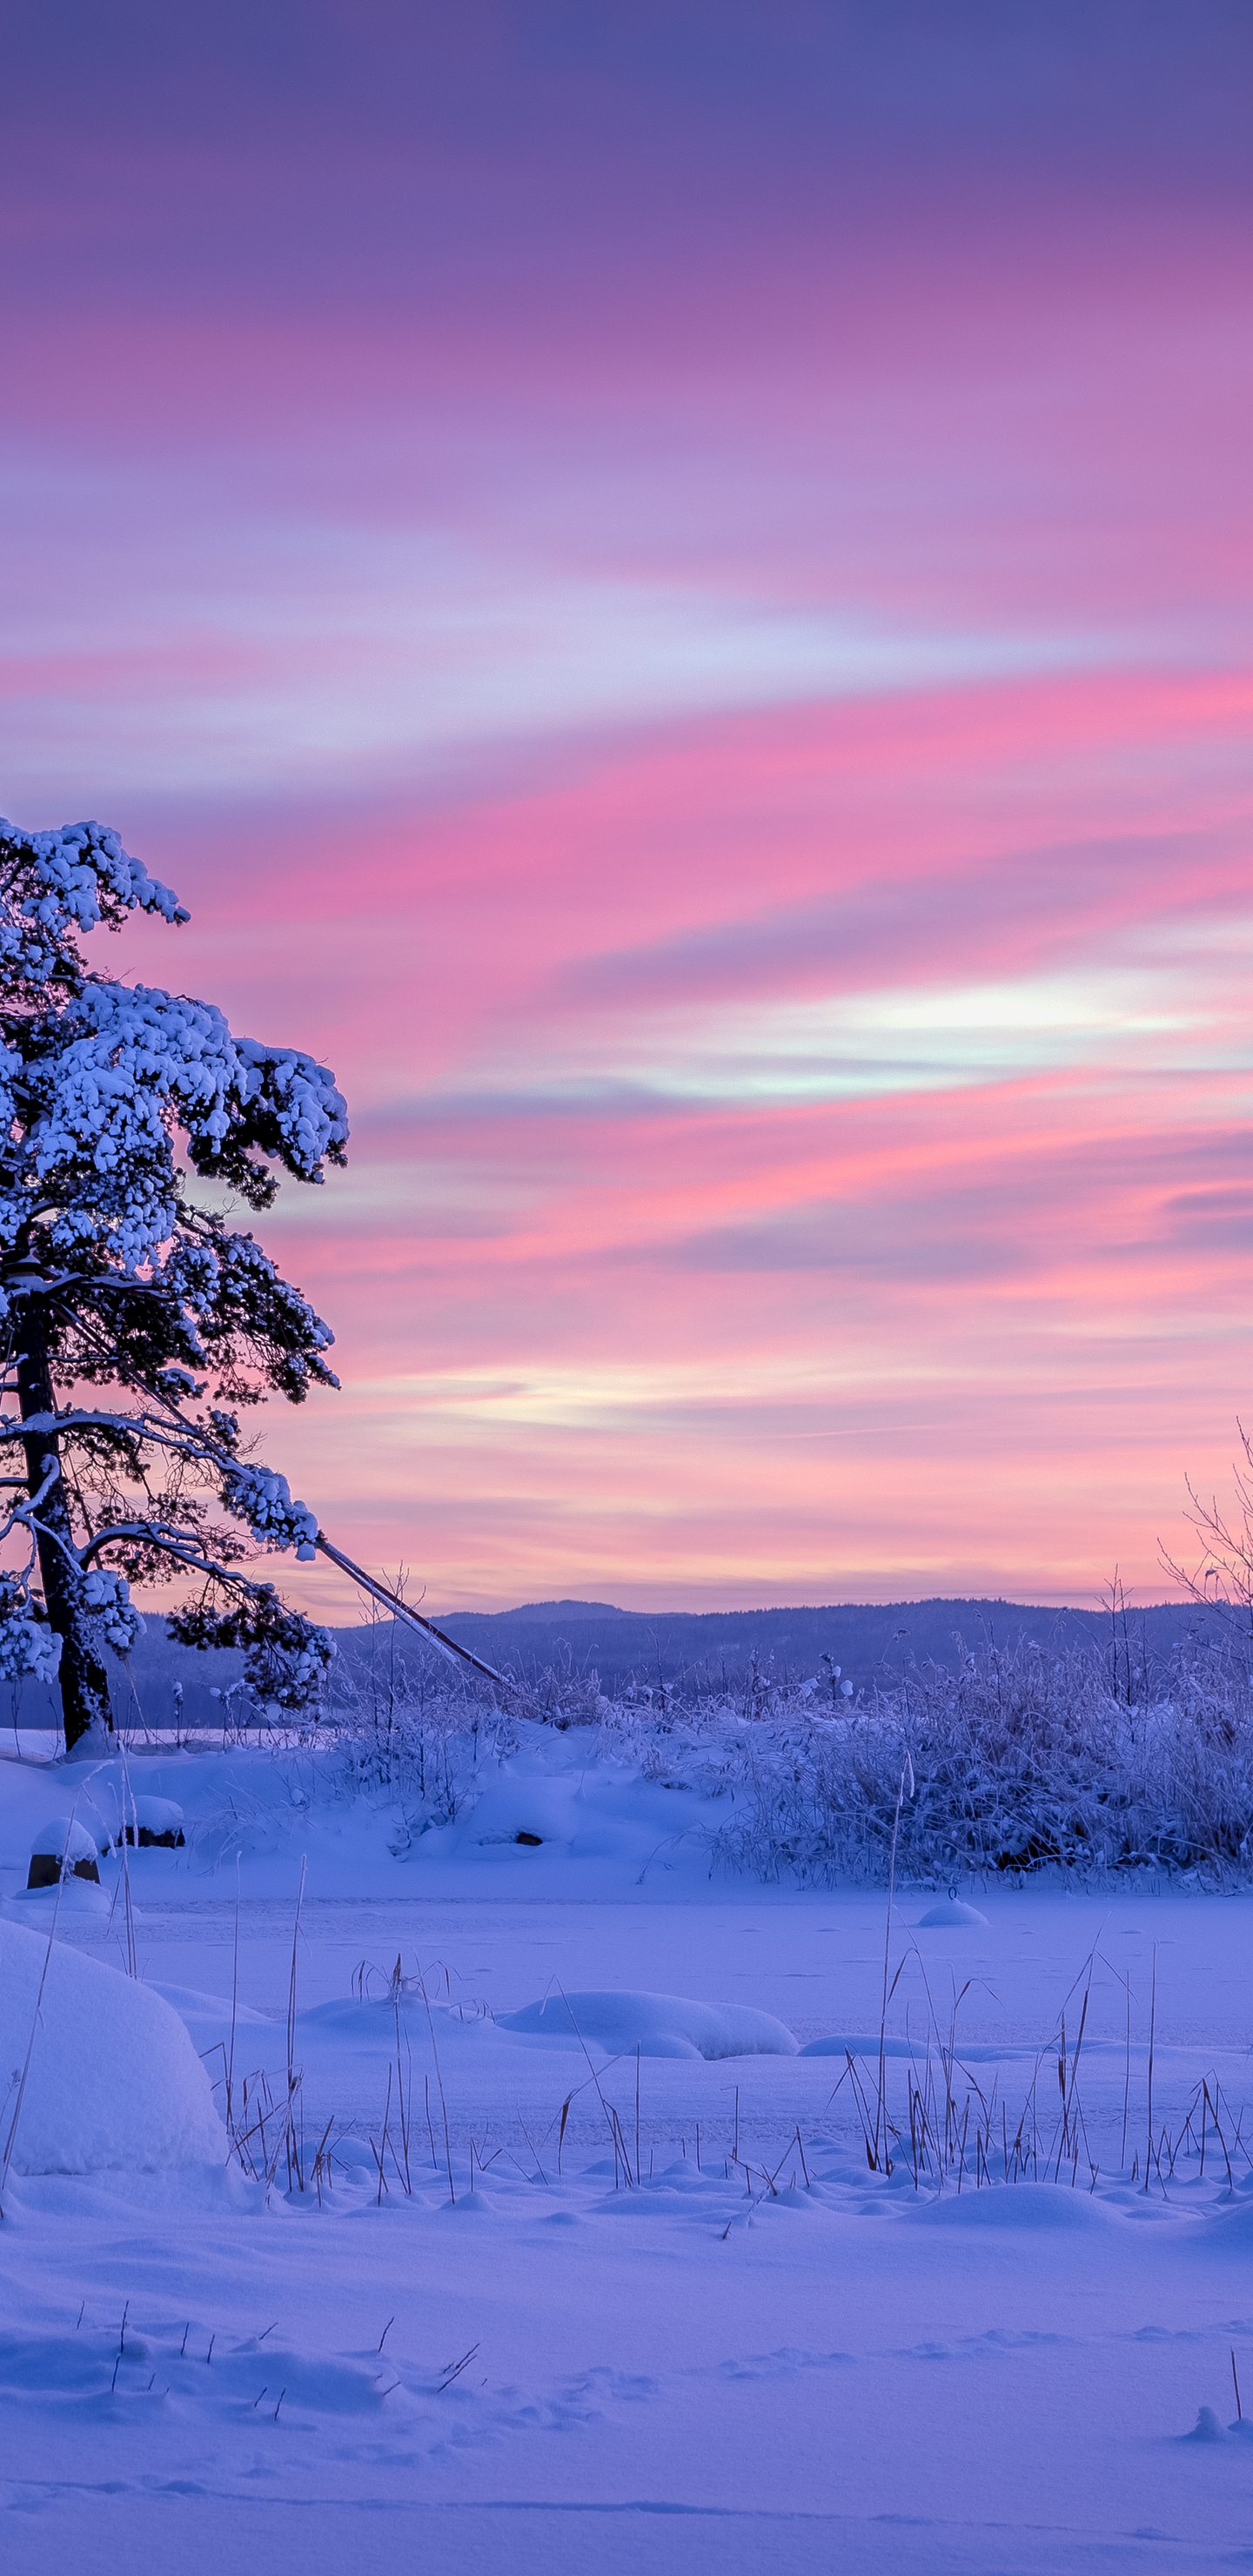 Image: Winter, snow, tree, sky